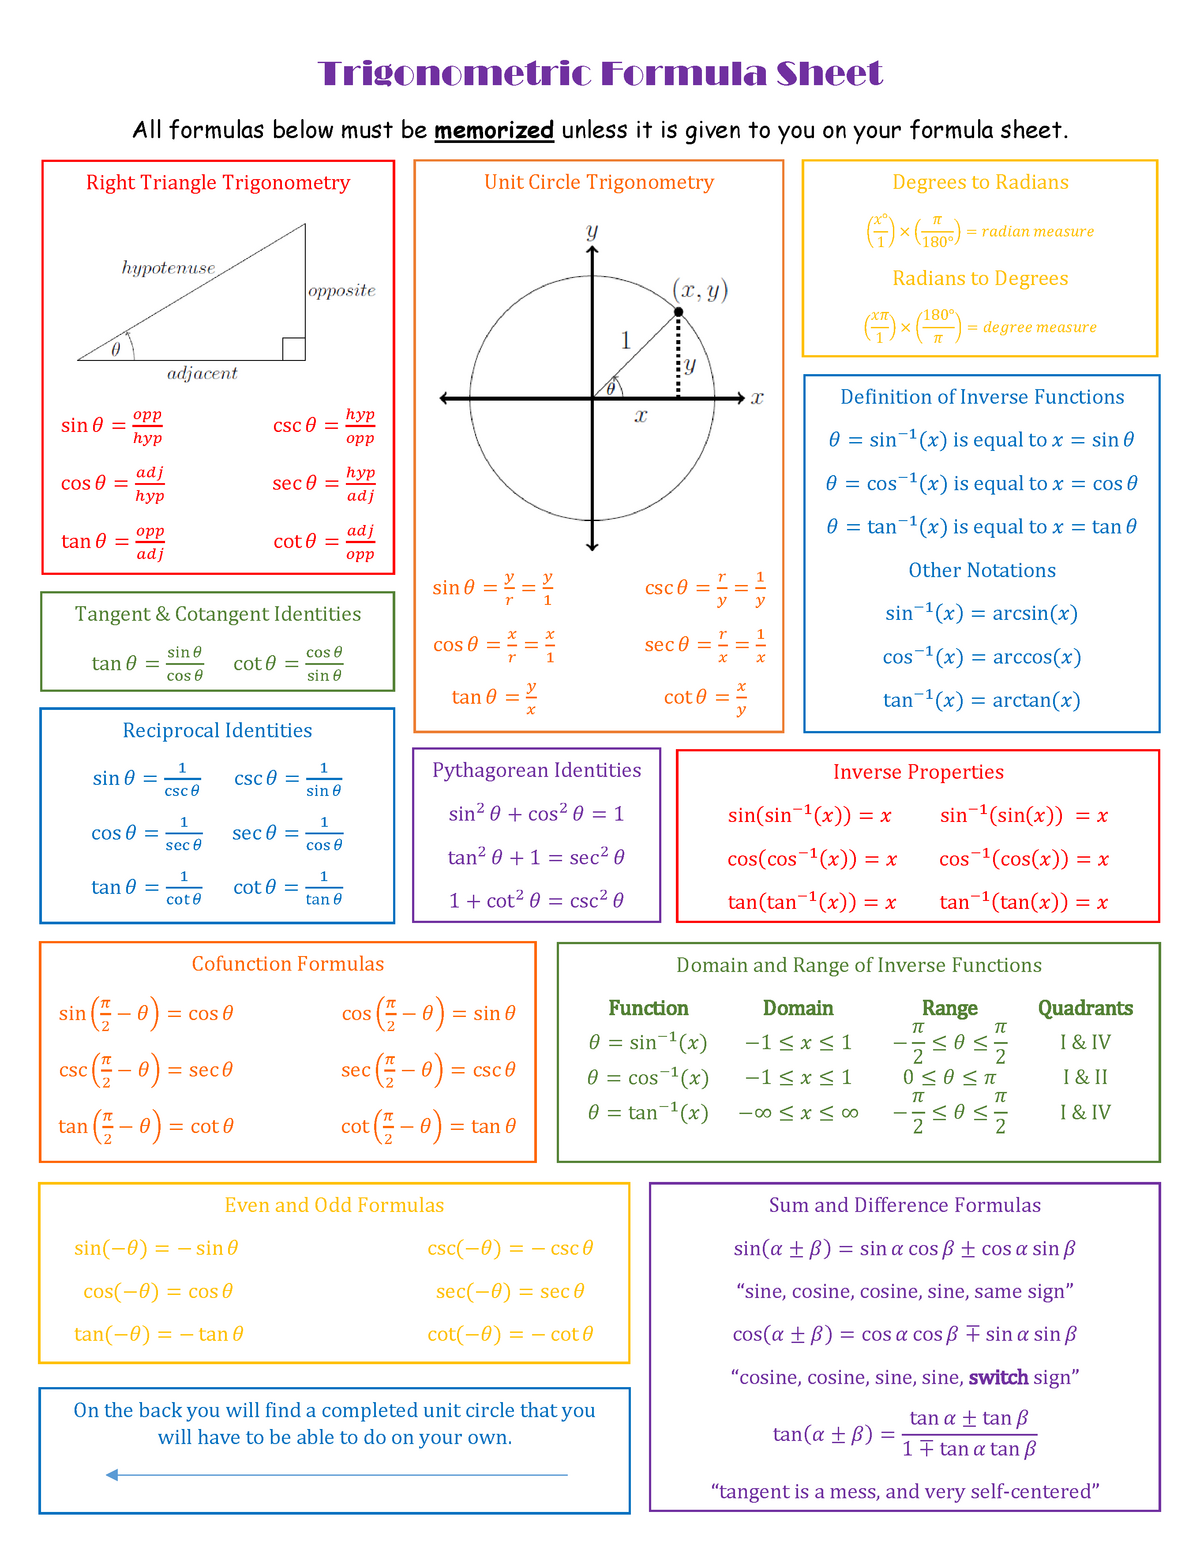 trigonometry-formula-sheet-warning-tt-undefined-function-32-trigonometric-formula-sheet-all